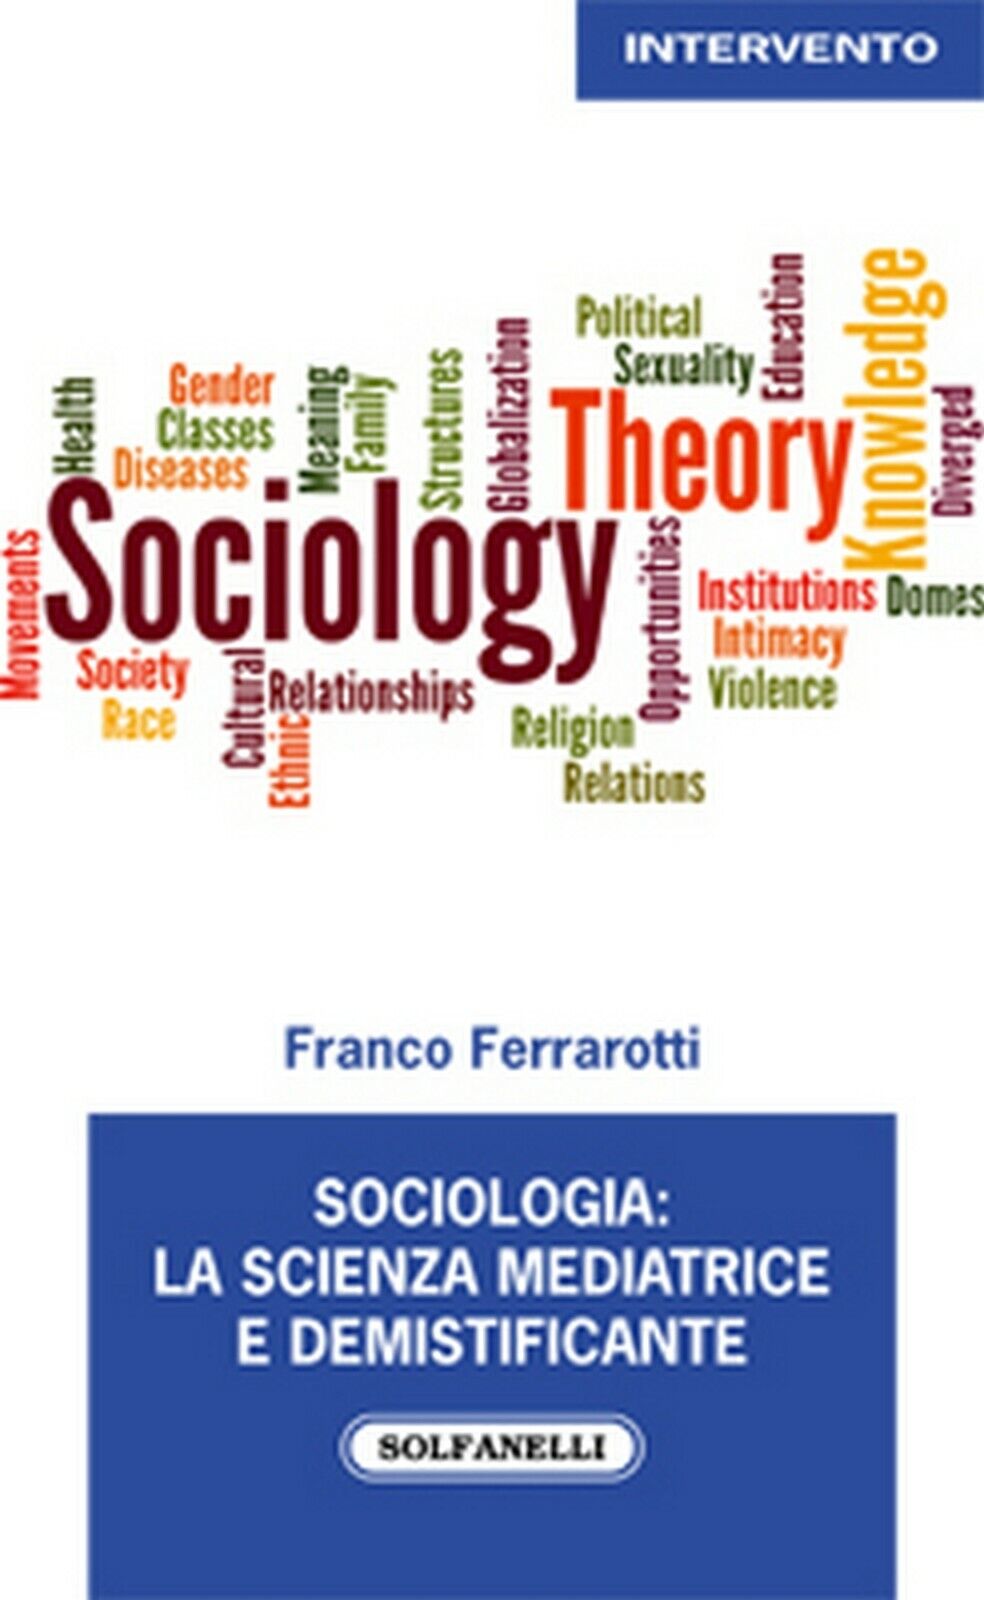 SOCIOLOGIA: LA SCIENZA MEDIATRICE E DEMISTIFICANTE  di Franco Ferrarotti libro usato